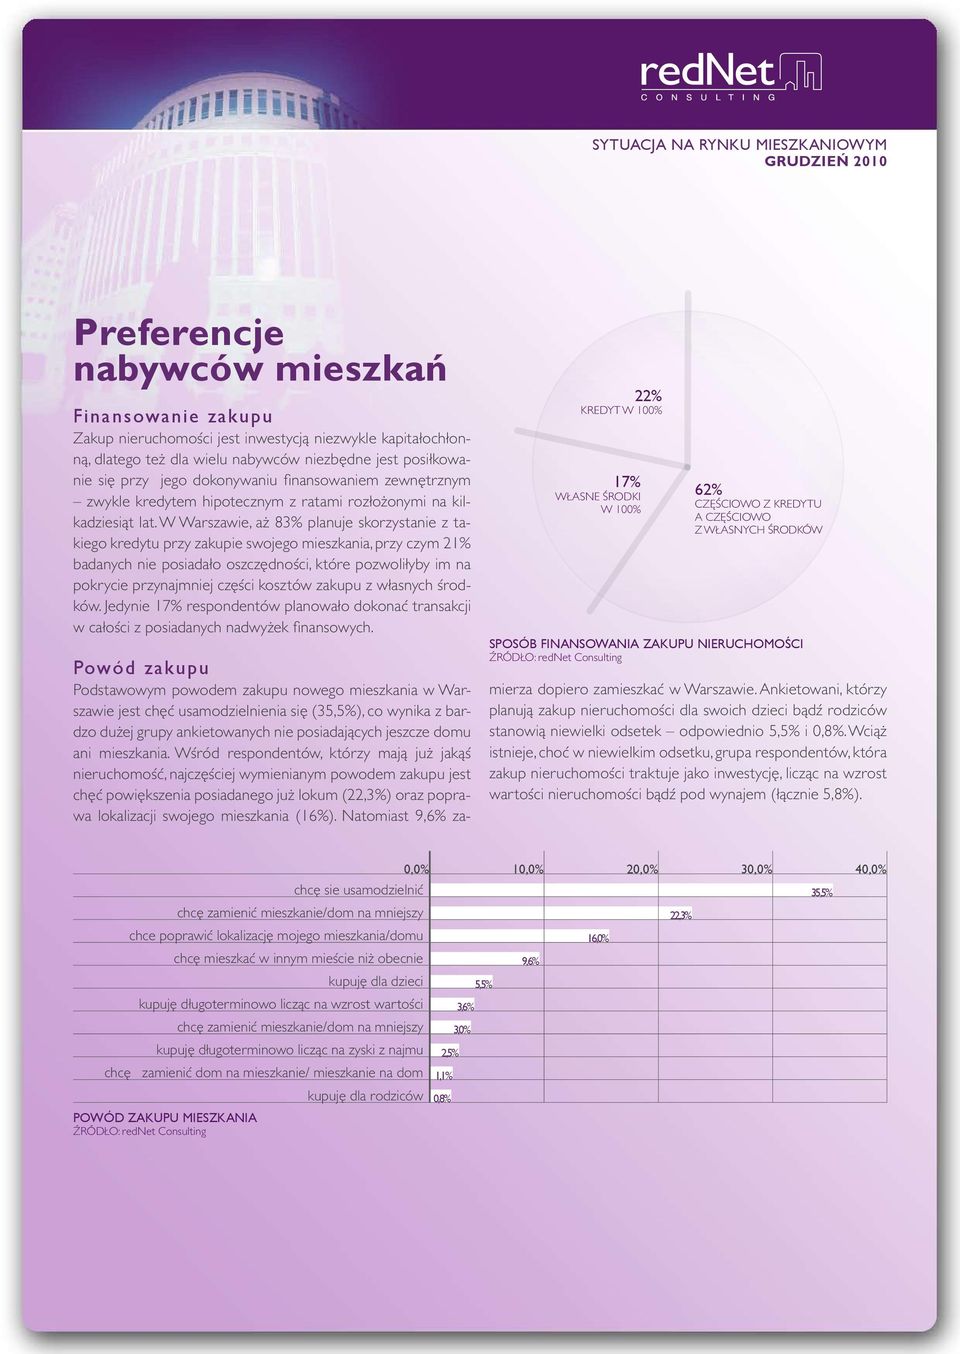 W Warszawie, aż 83% planuje skorzystanie z takiego kredytu przy zakupie swojego mieszkania, przy czym 21% badanych nie posiadało oszczędności, które pozwoliłyby im na pokrycie przynajmniej części